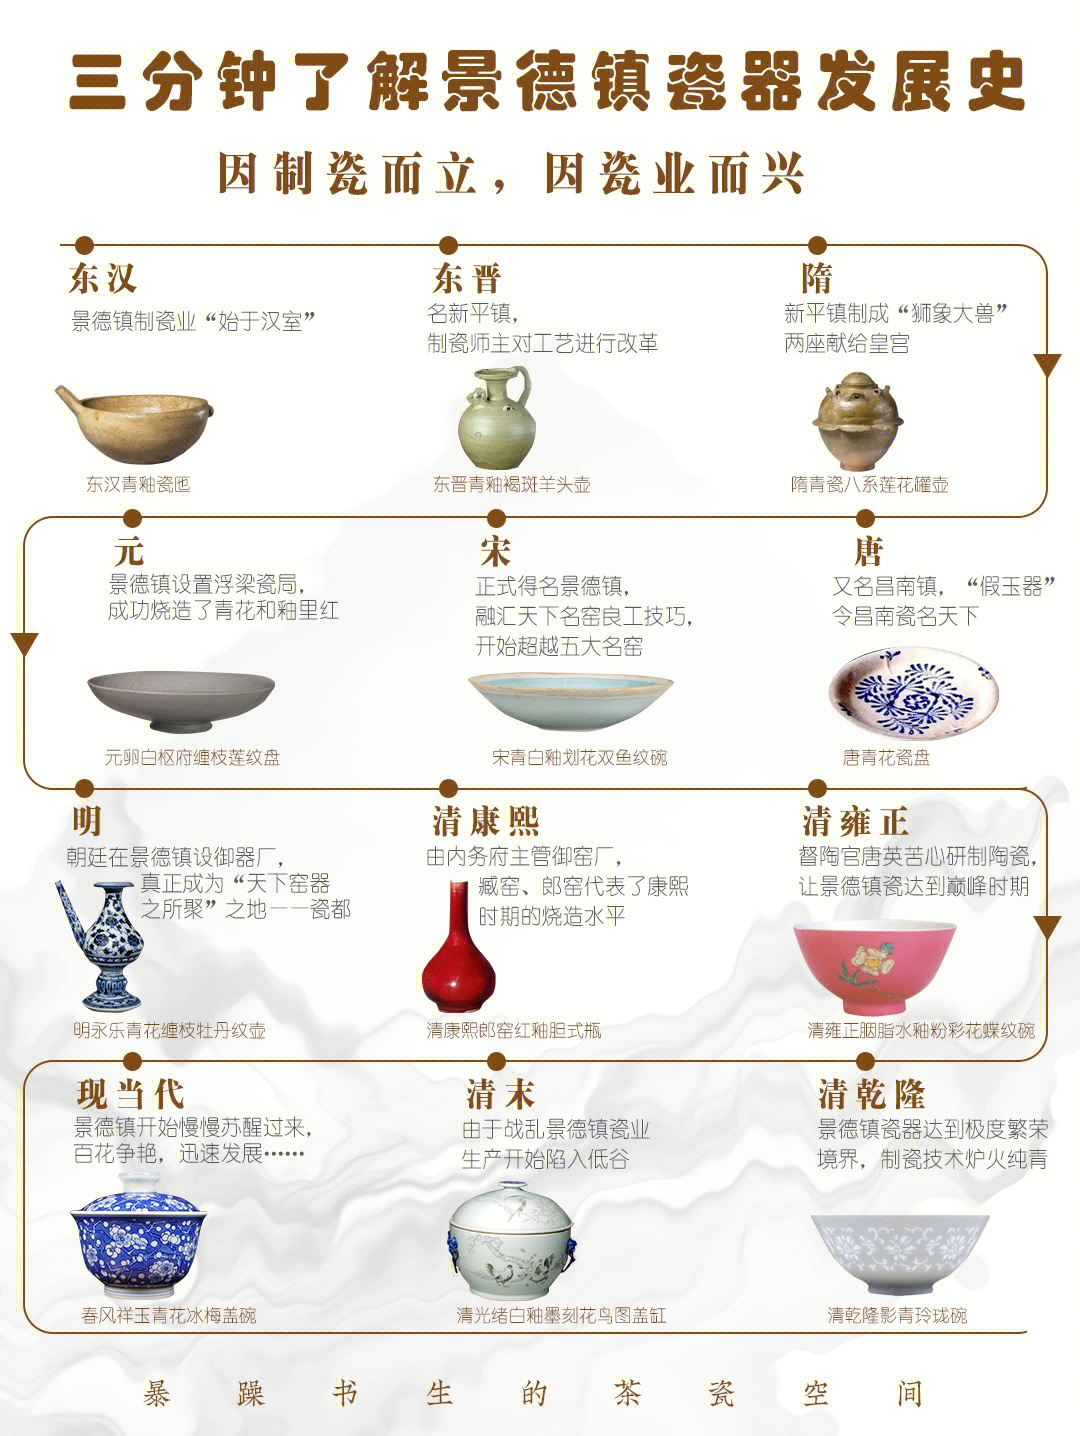 如果说中国是世界瓷器的代表,那么景德镇瓷器可以称为中国瓷器的代表